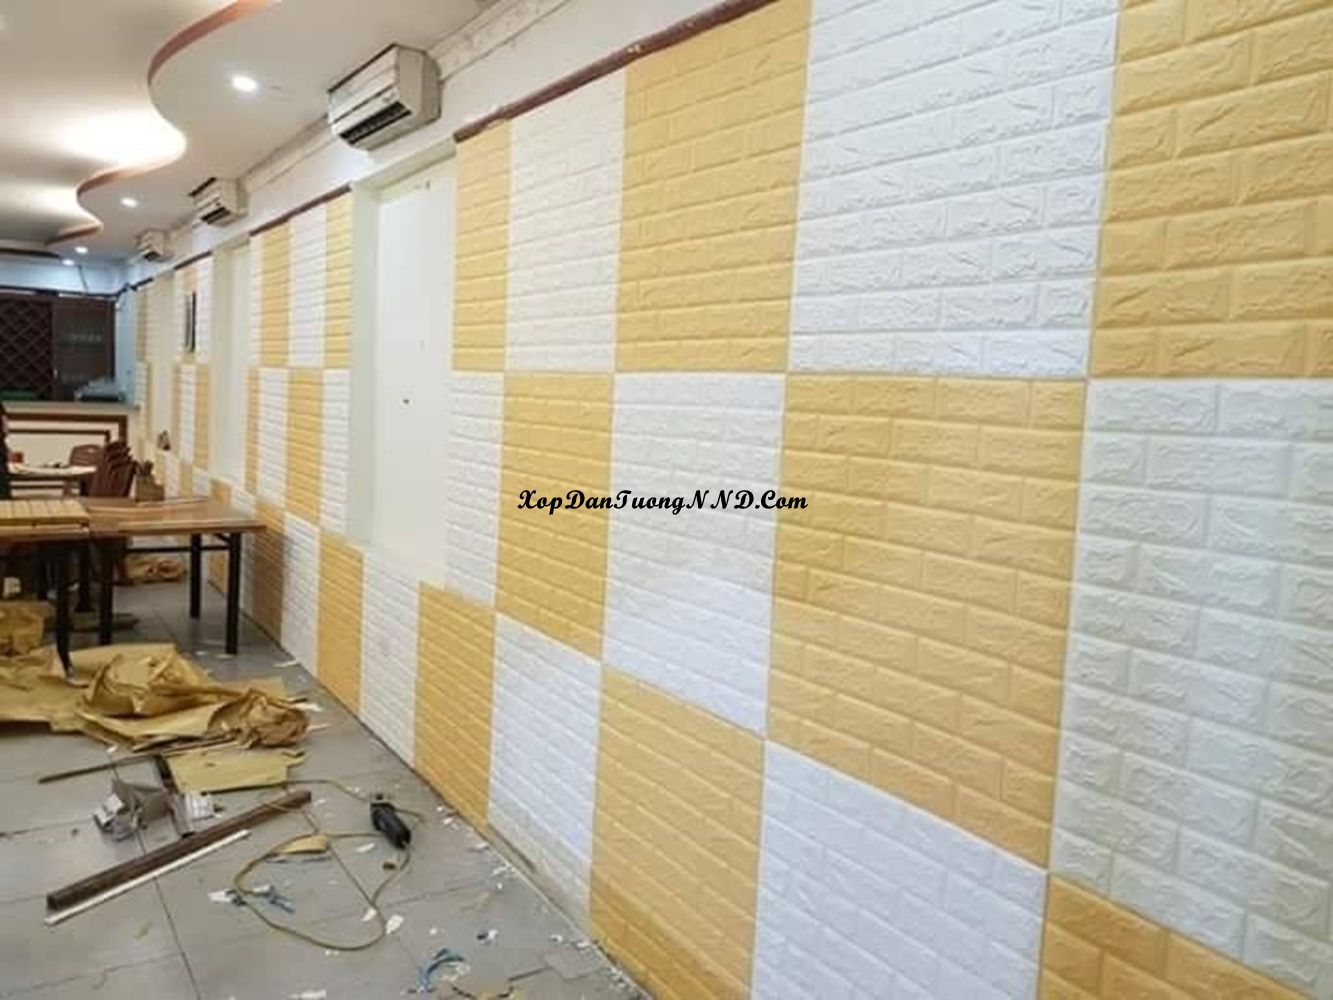 Xốp dán tường màu vàng trắng